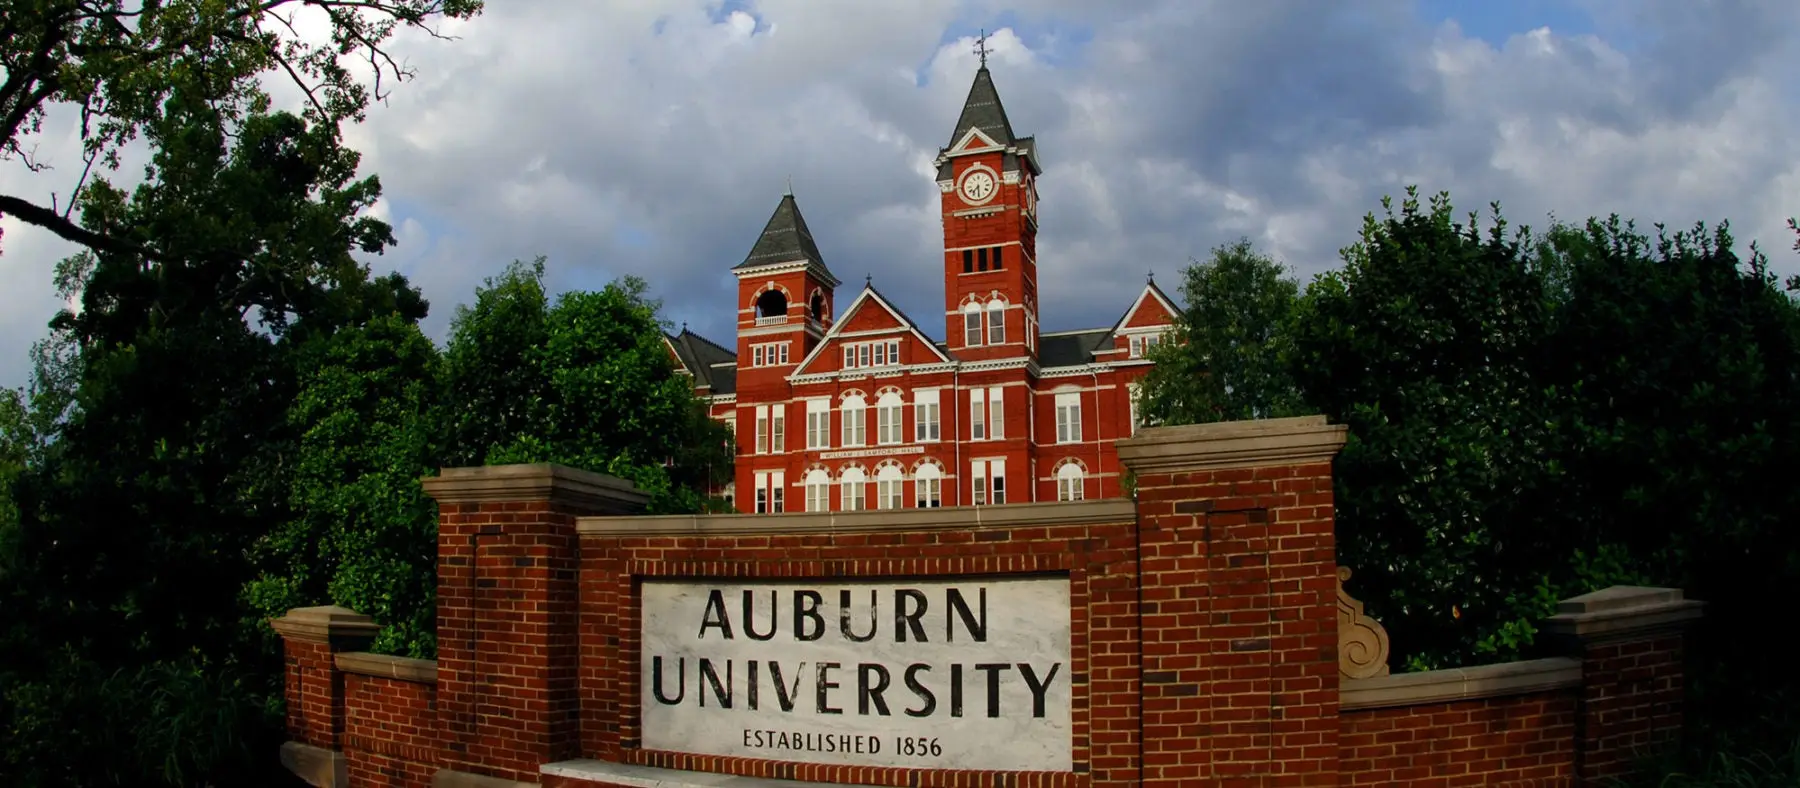 Image of Auburn University